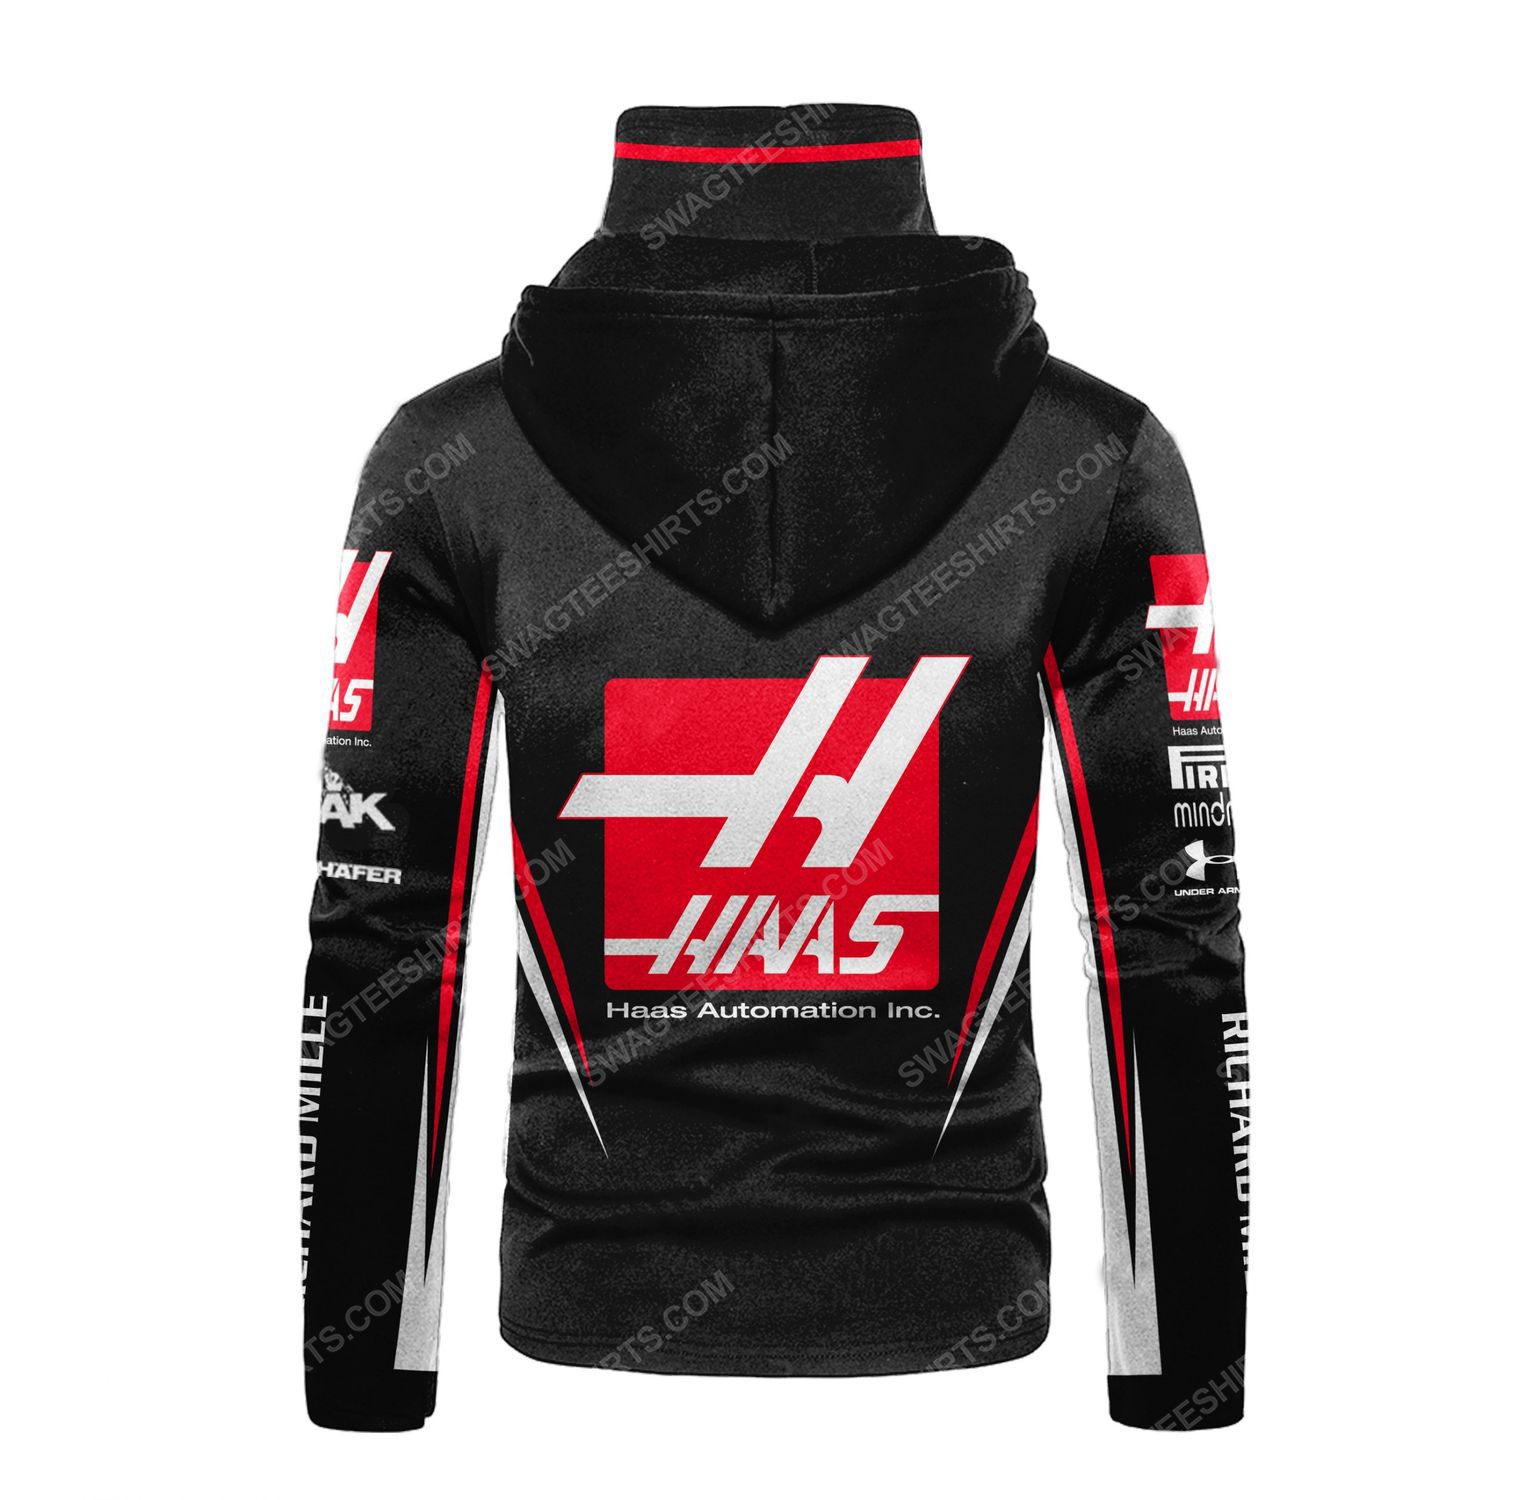 Haas automation inc racing team motorsport full printing hoodie mask - back